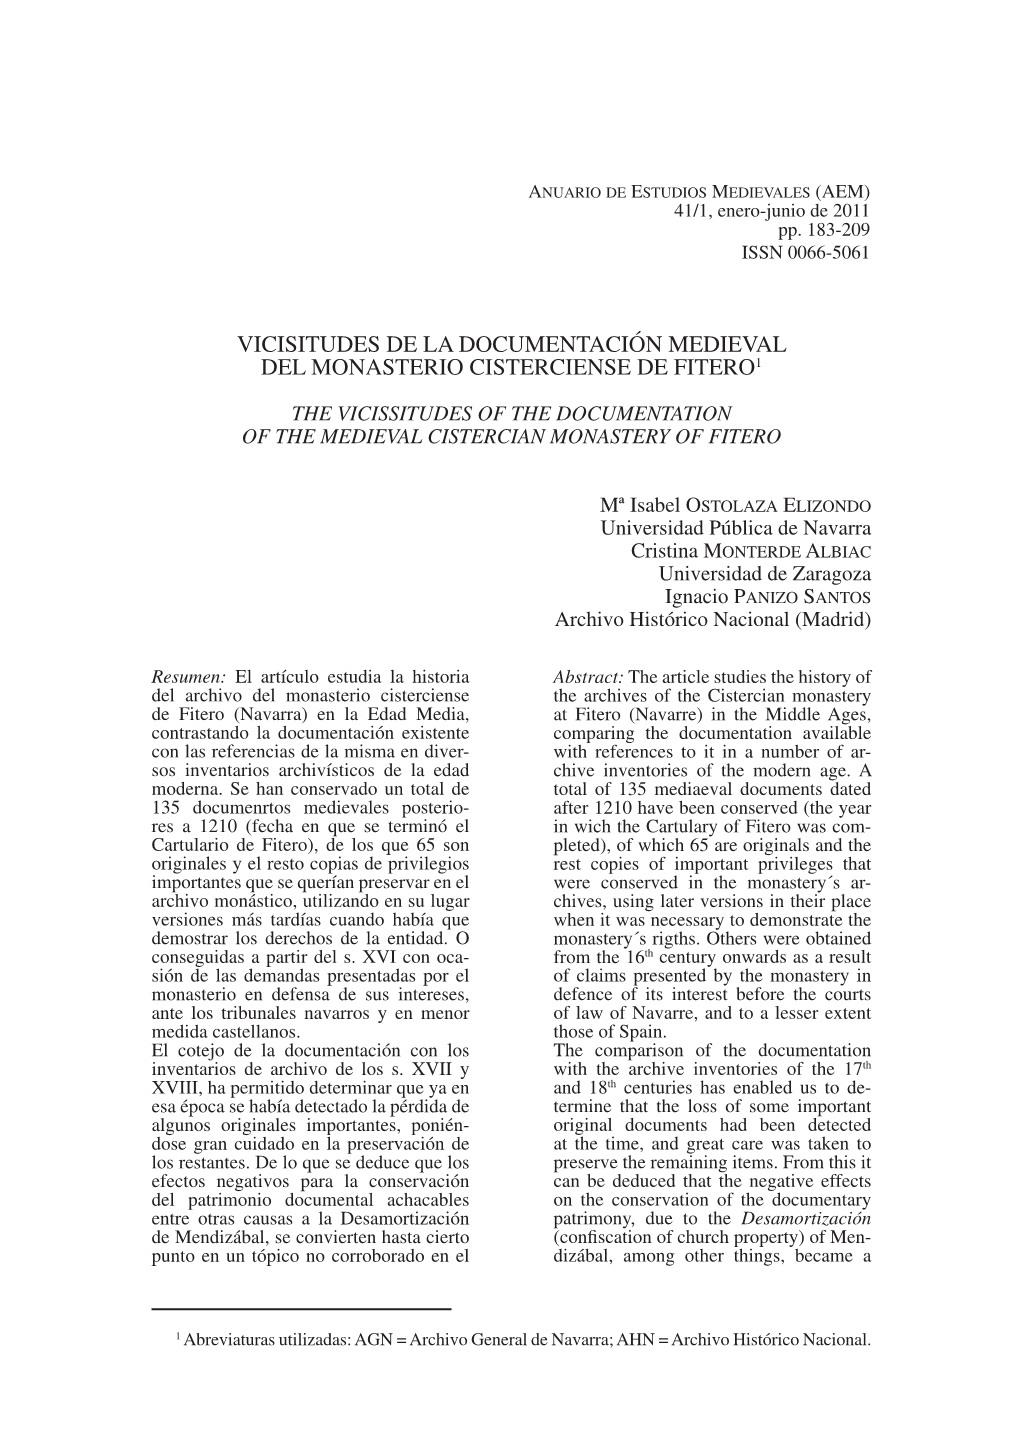 Vicisitudes De La Documentación Medieval Del Monasterio Cisterciense De Fitero1